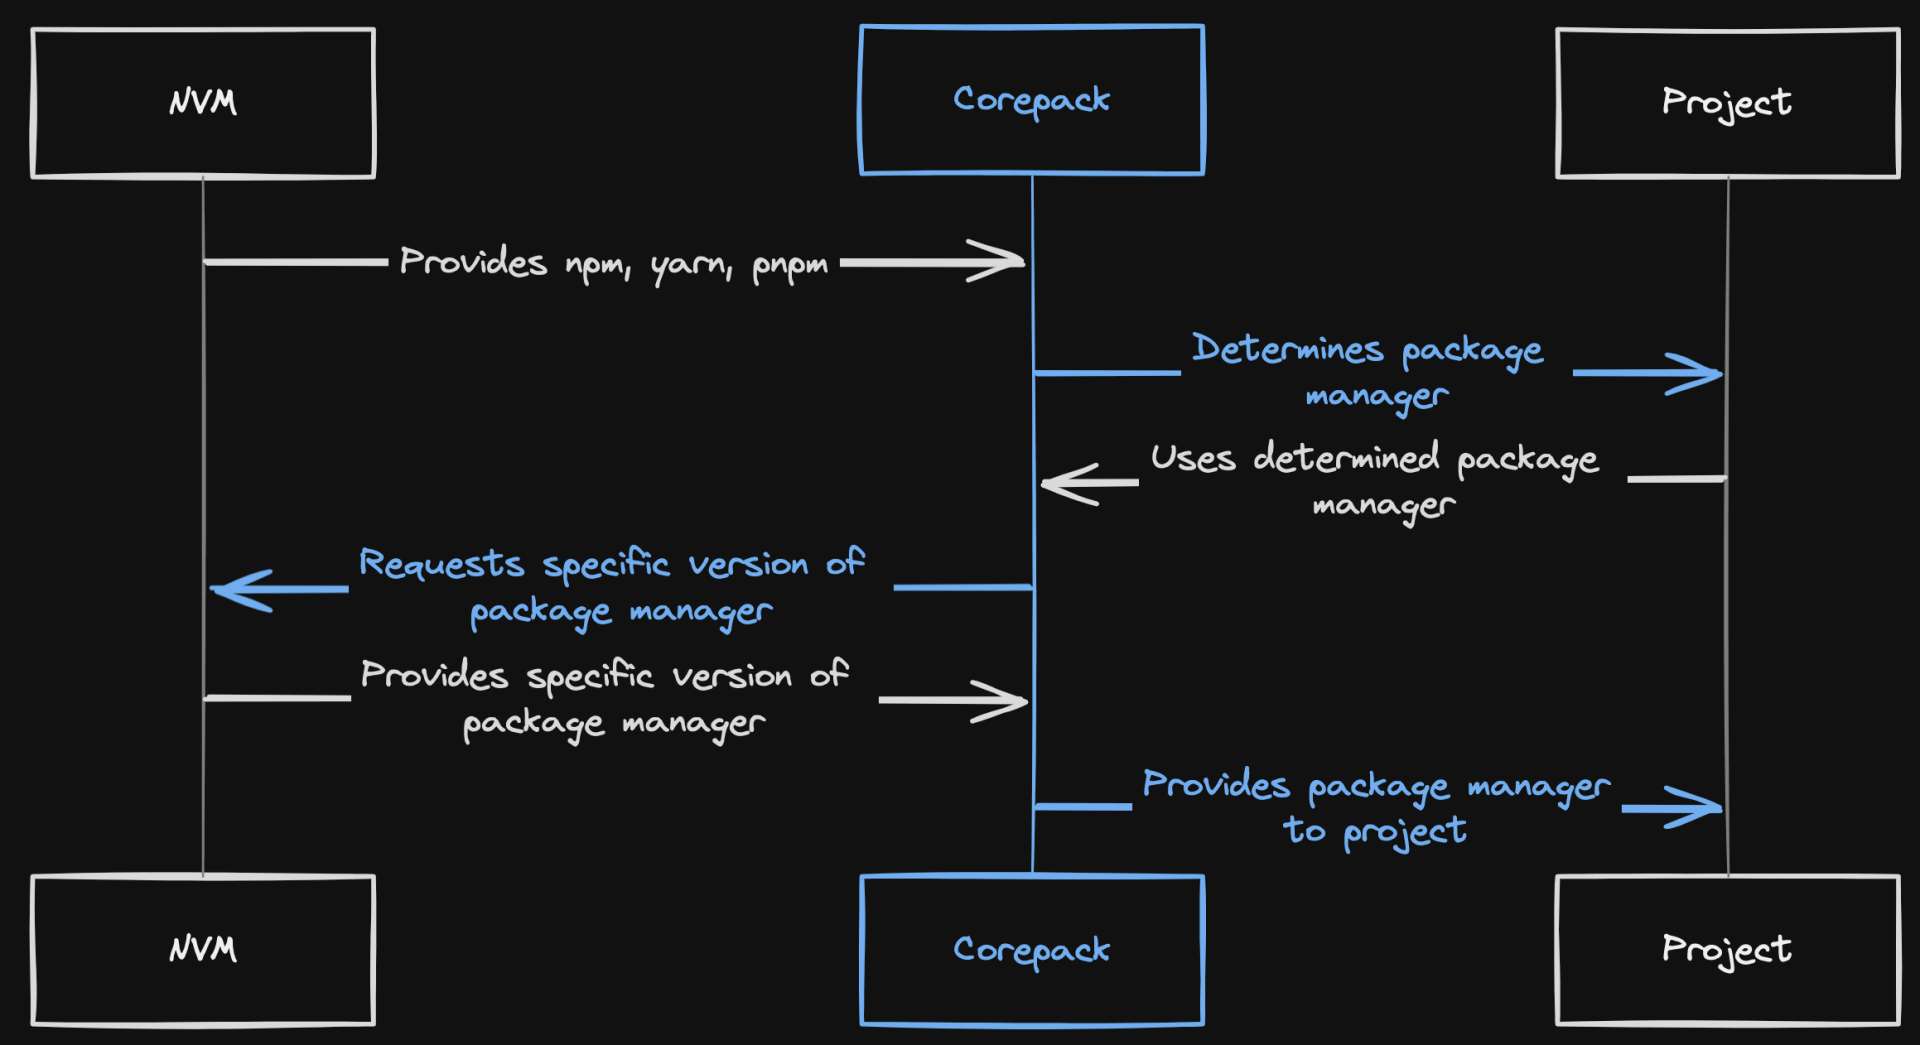 Corepack diagram